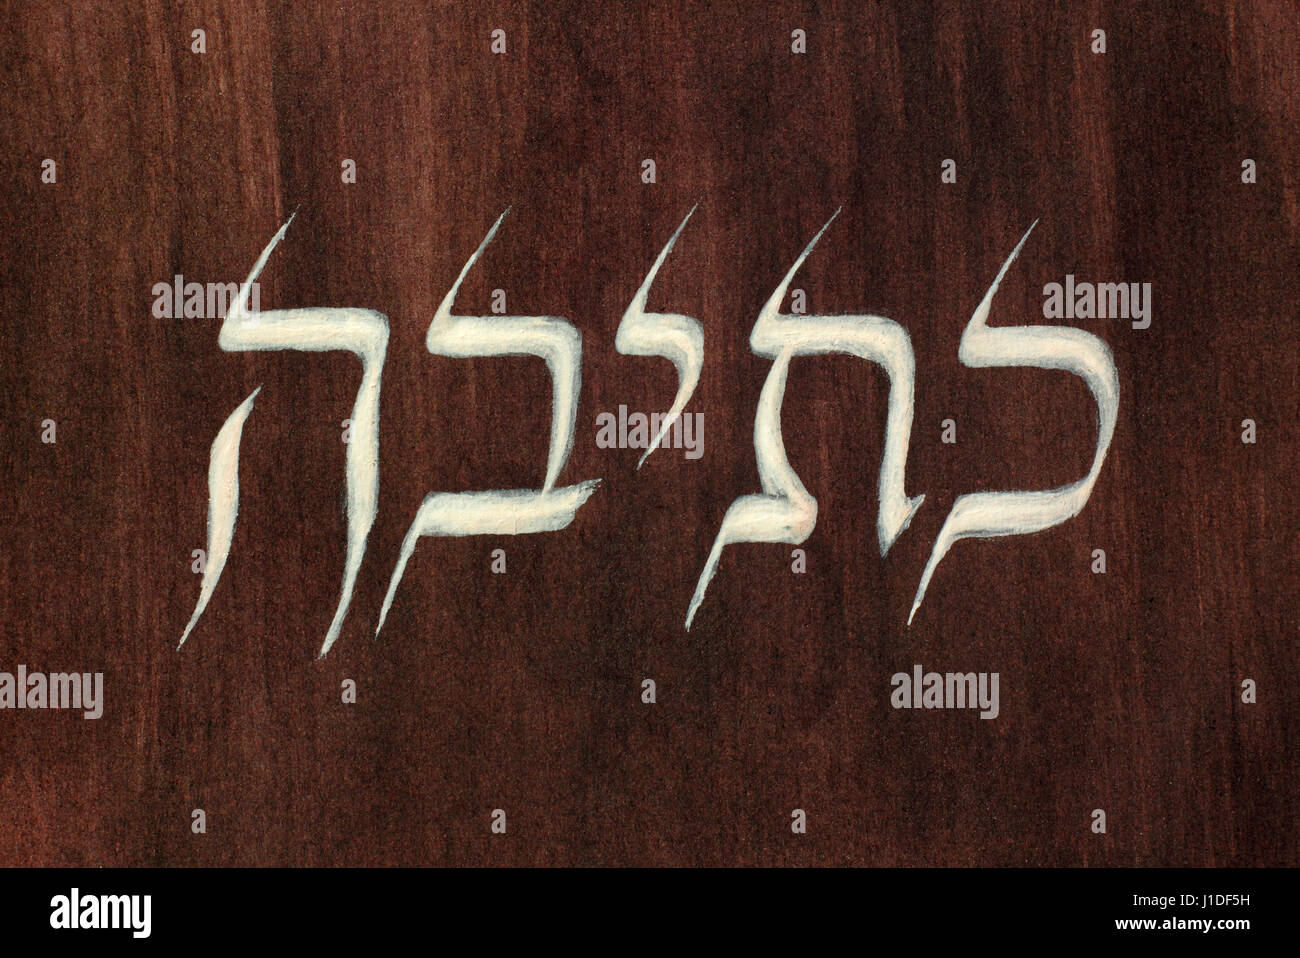 Mot écrit en hébreu peint la langue et de l'écriture sur le papier peint foncé Banque D'Images